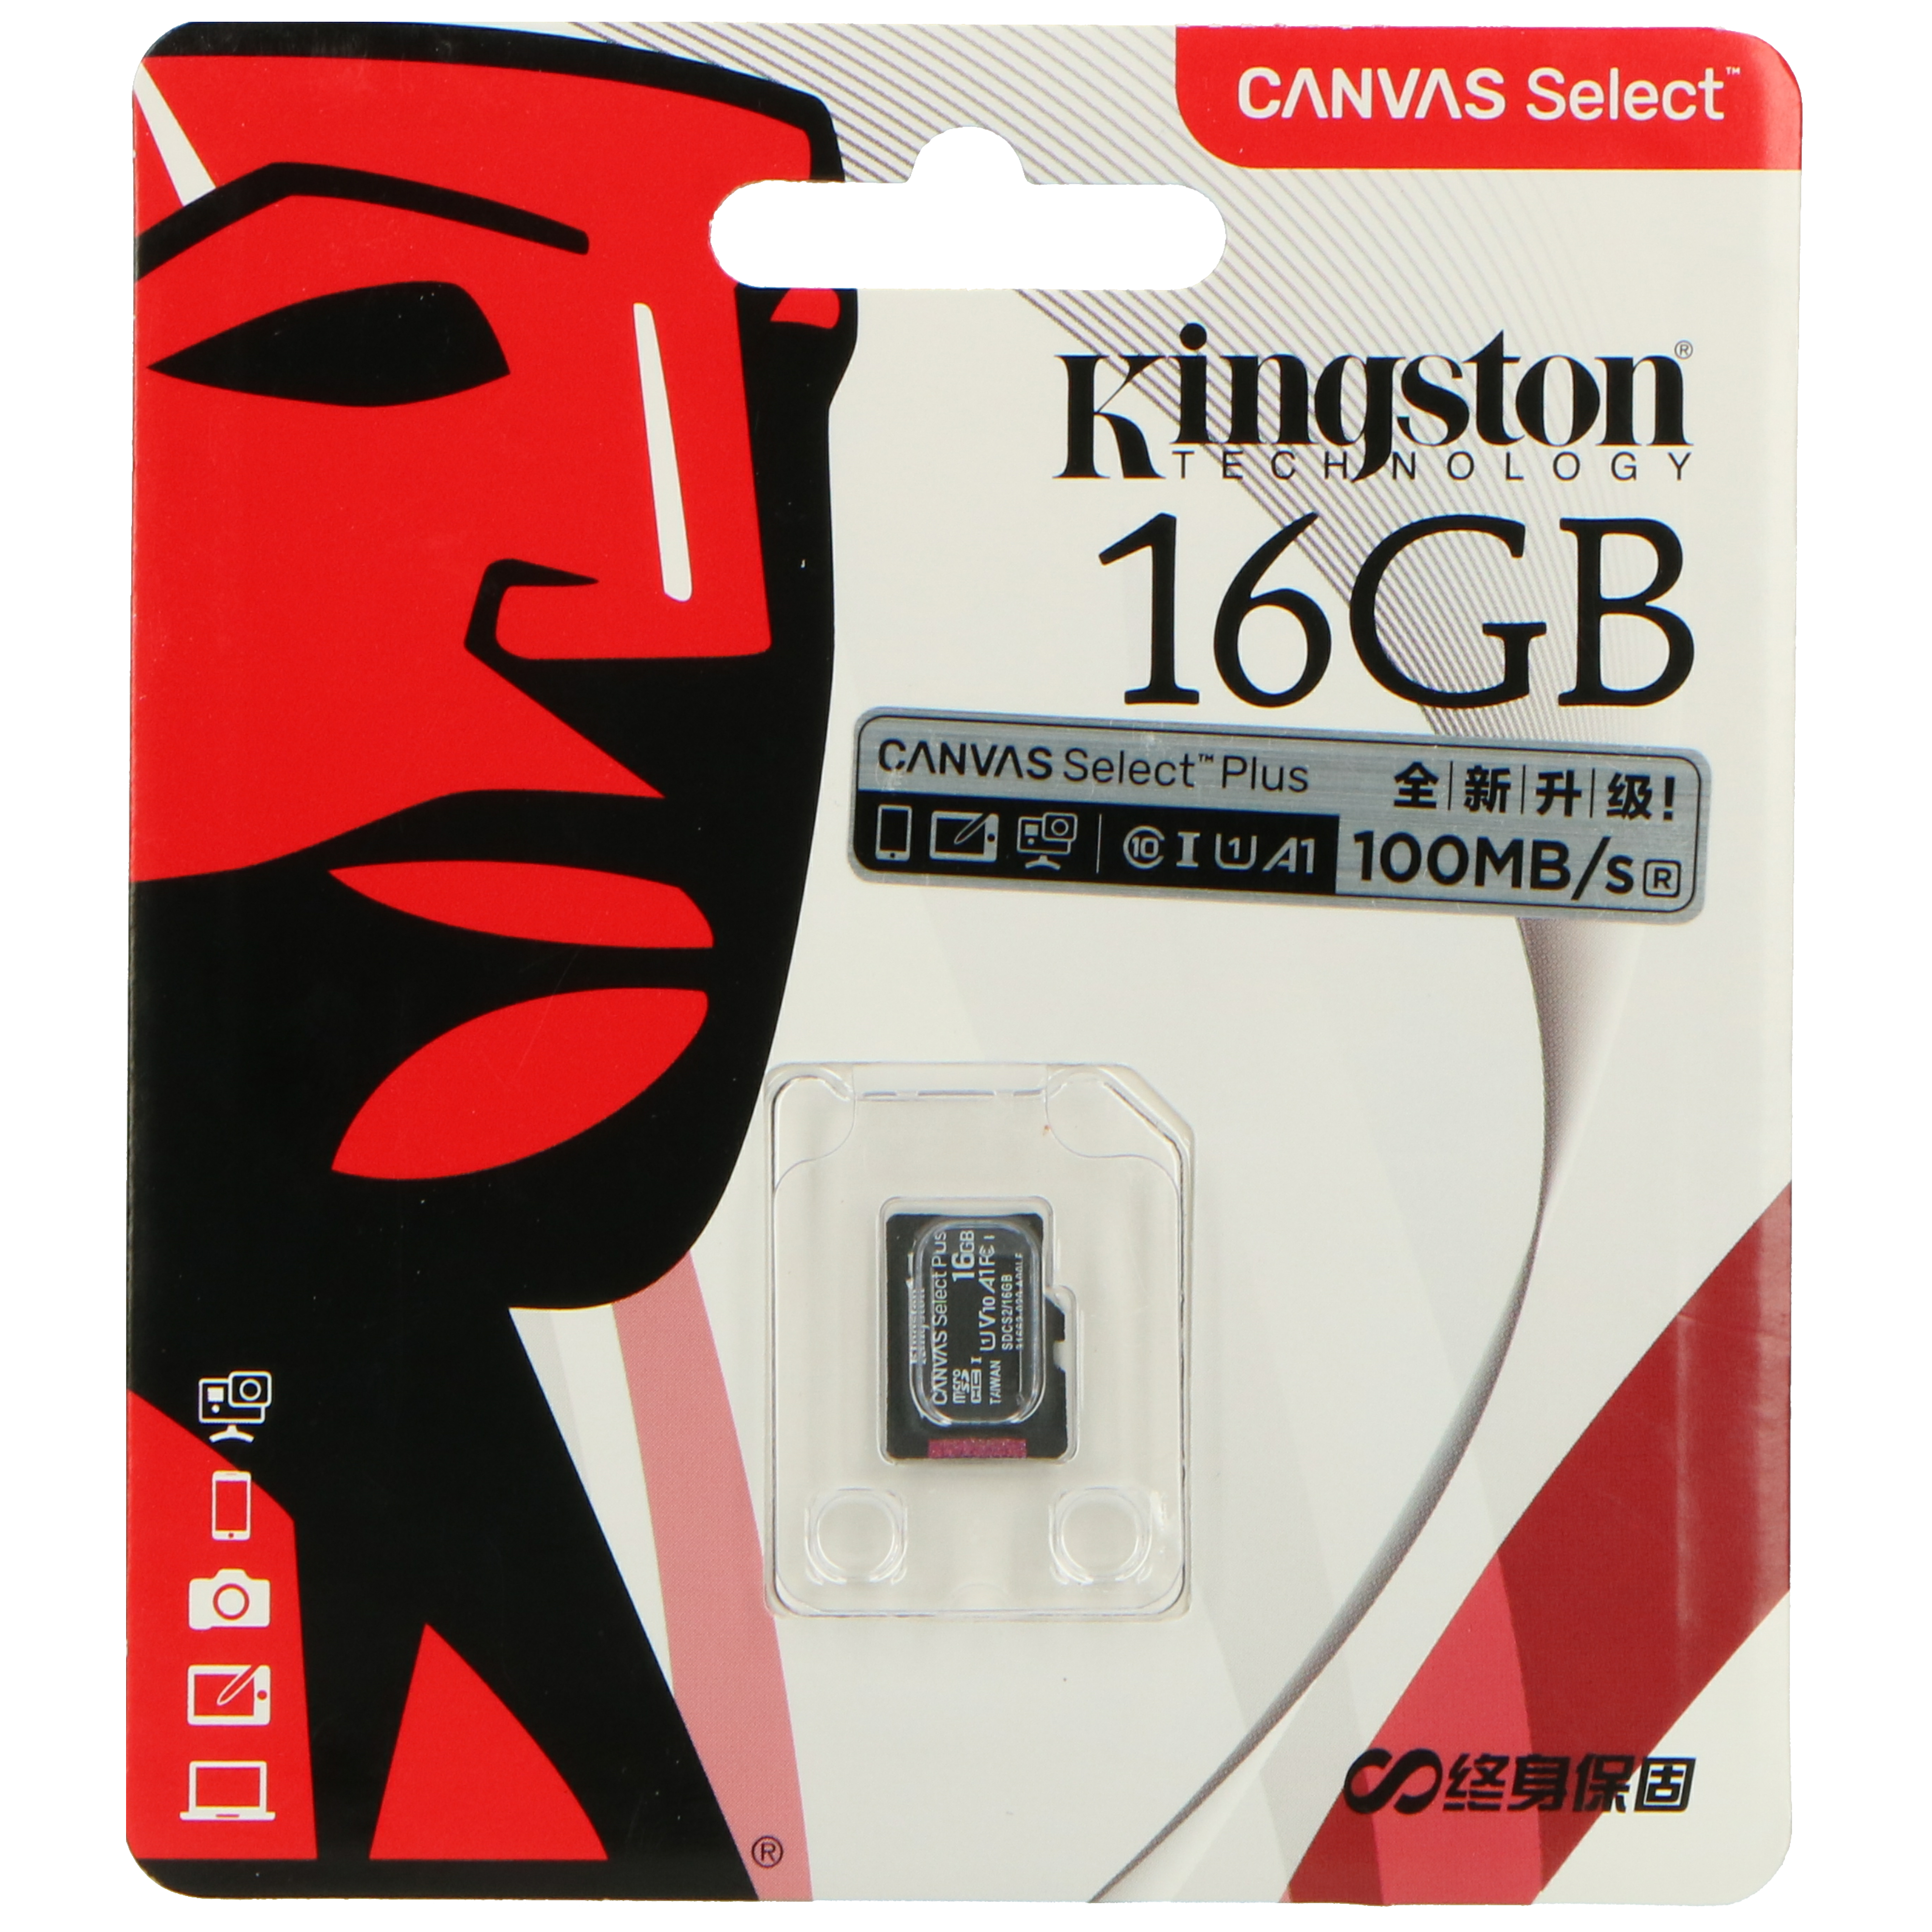 16 SD16, SD-Karte, ALECTO Micro-SD GB